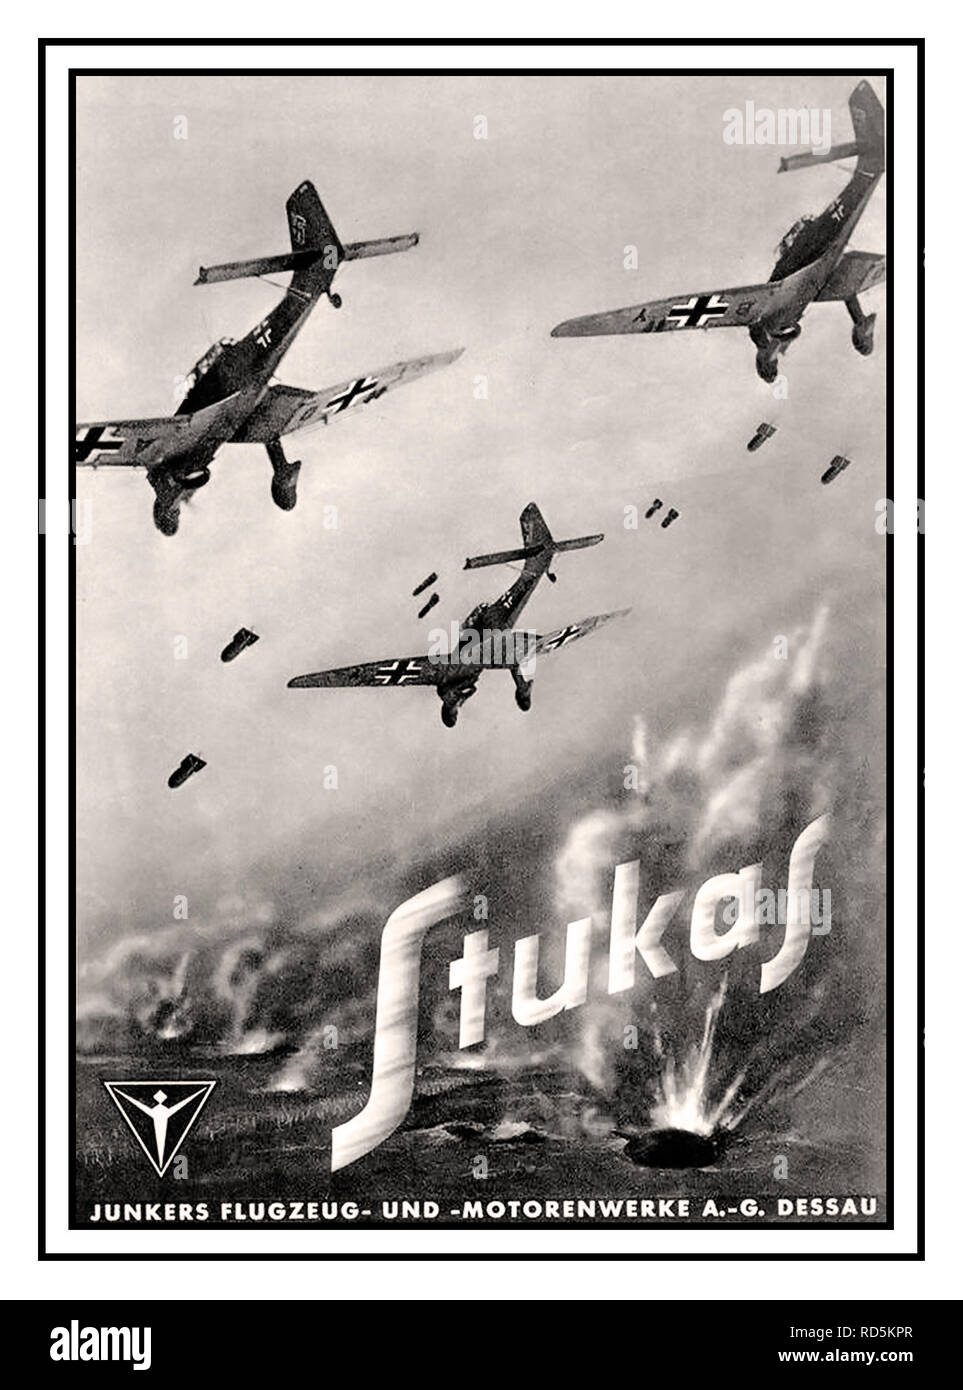 STUKA JU-87 Vintage WW2 Propaganda Poster für NS-Jagdbomber die Junkers Ju-87 TUKAS' Dive-Bomber durch "Junkers Flugzeug und Motorund Enwerke AG Dessau "Deutschland Hersteller Werbe Poster Stockfoto